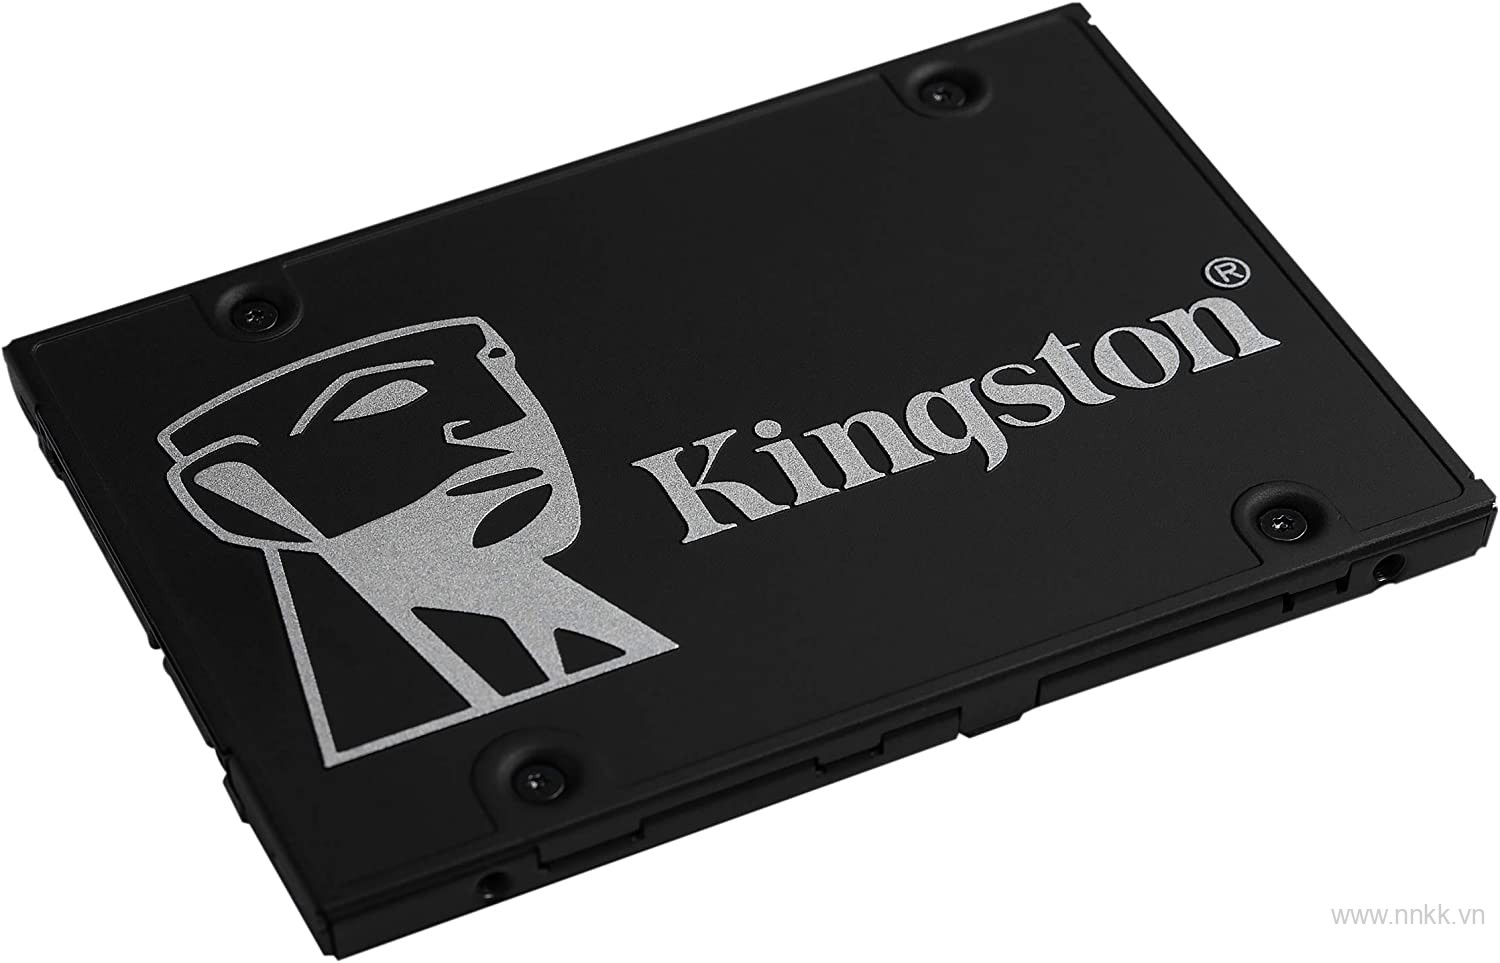 Ổ cứng ssd kingston KC600 - 1024GB - 2.5 inch bảo hành 5 năm